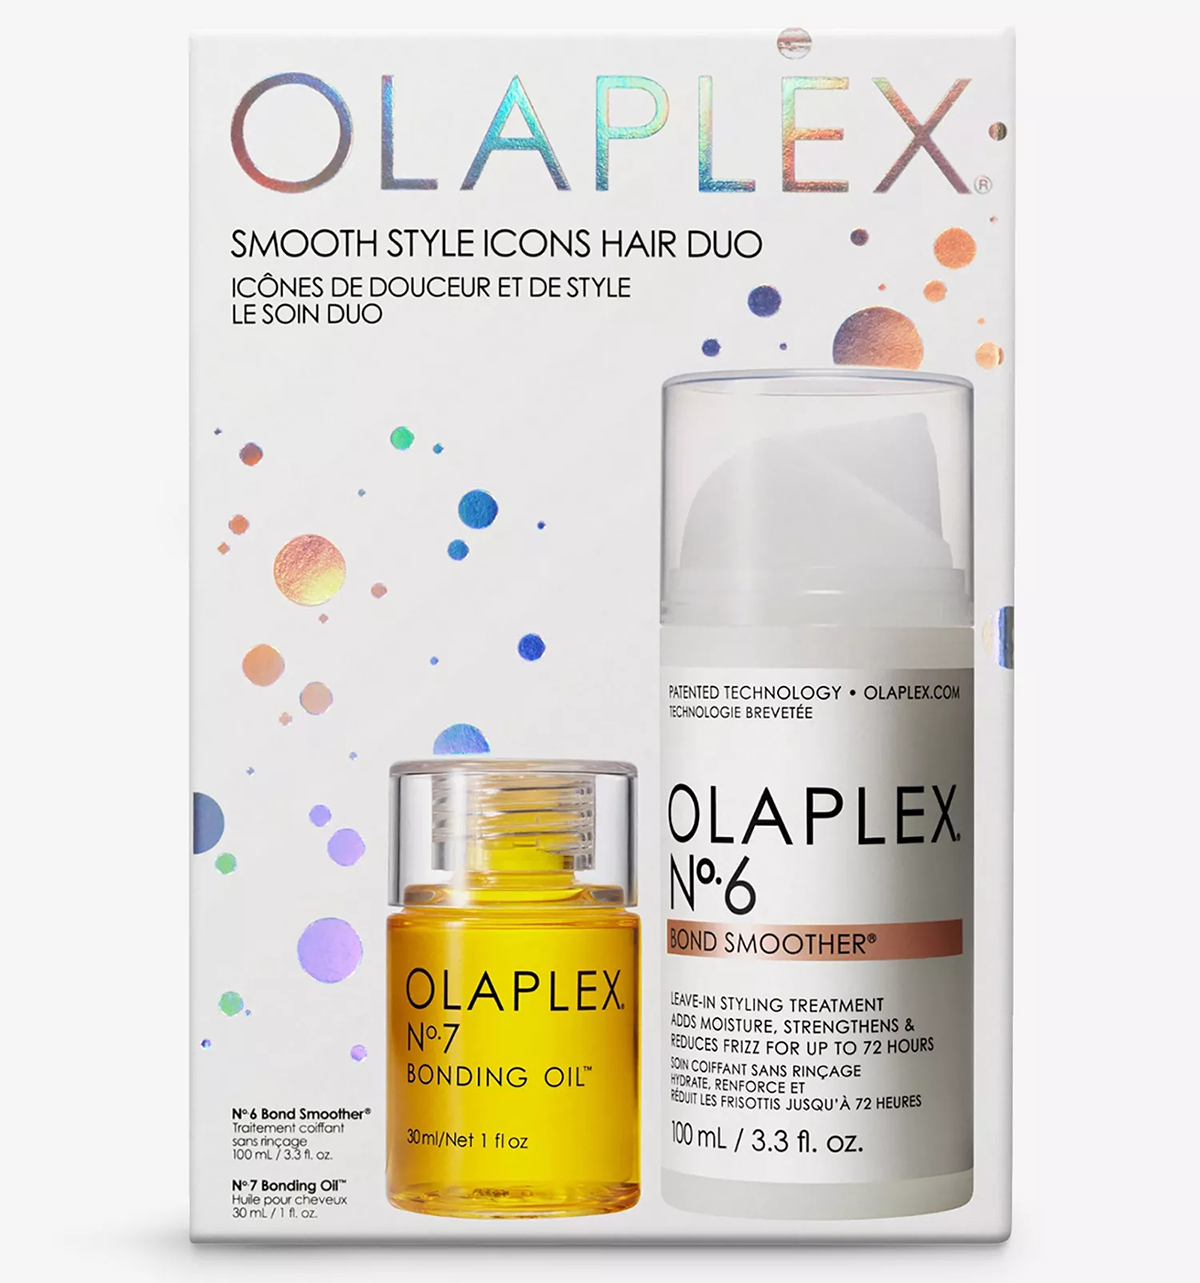 Olaplex Smooth Style Icons gift set